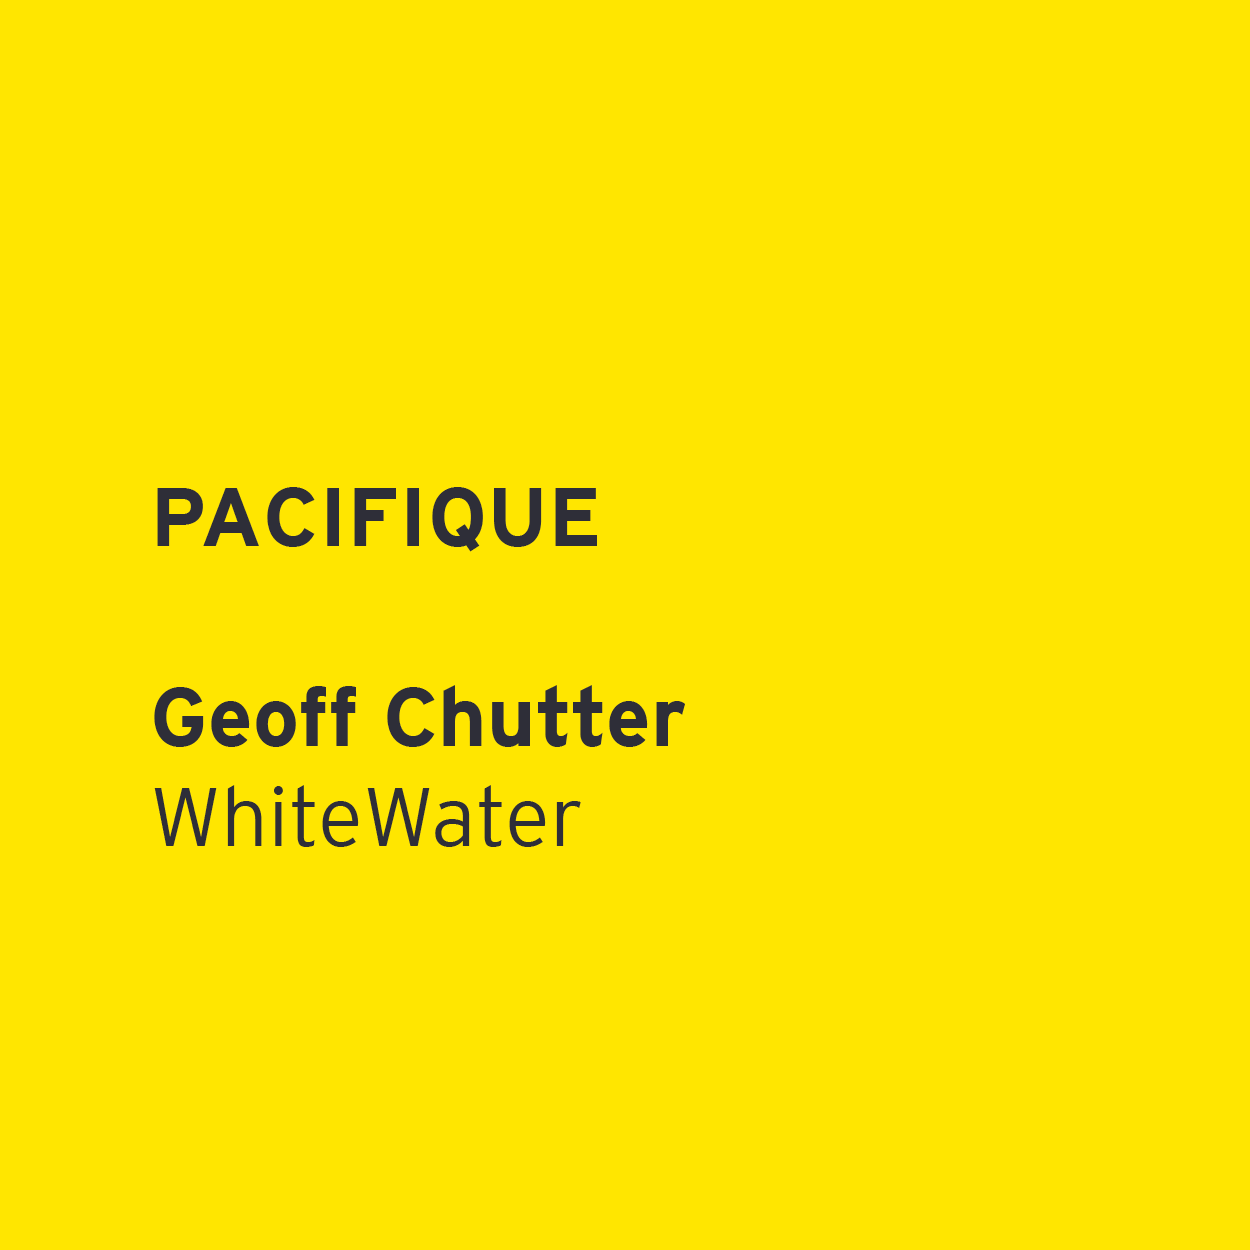             Geoff Chutter – WhiteWater         